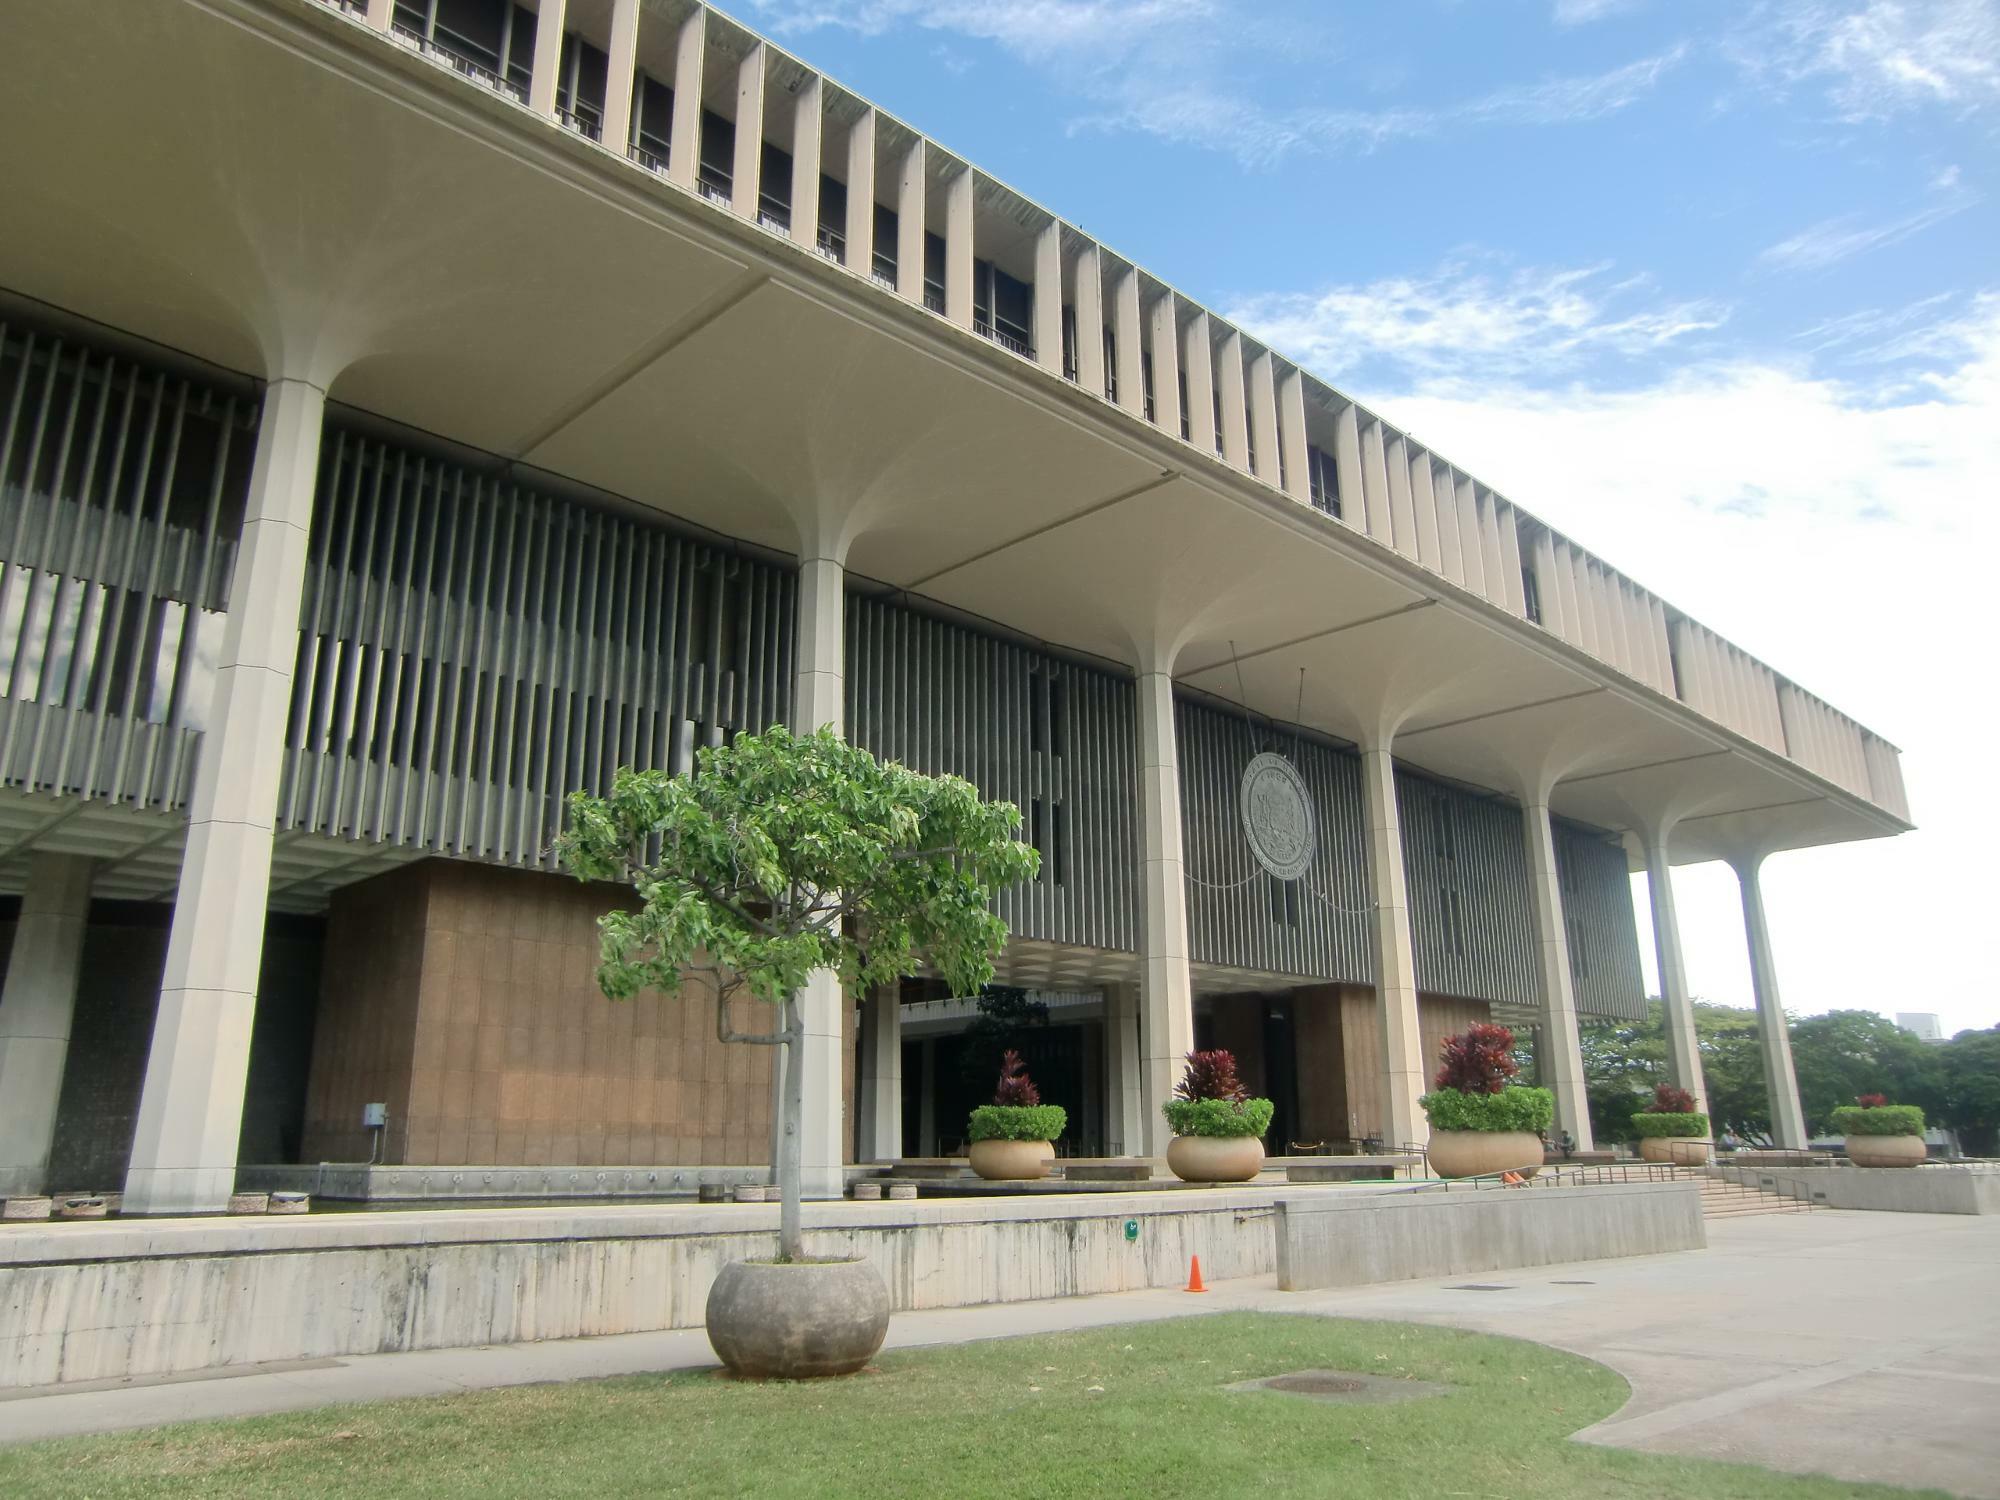 ハワイの政治の拠点はハワイ州・オアフ島内のダウンタウンエリアにあるハワイ州庁舎。州庁社内は一部見学が可能である（2014年筆者撮影）。